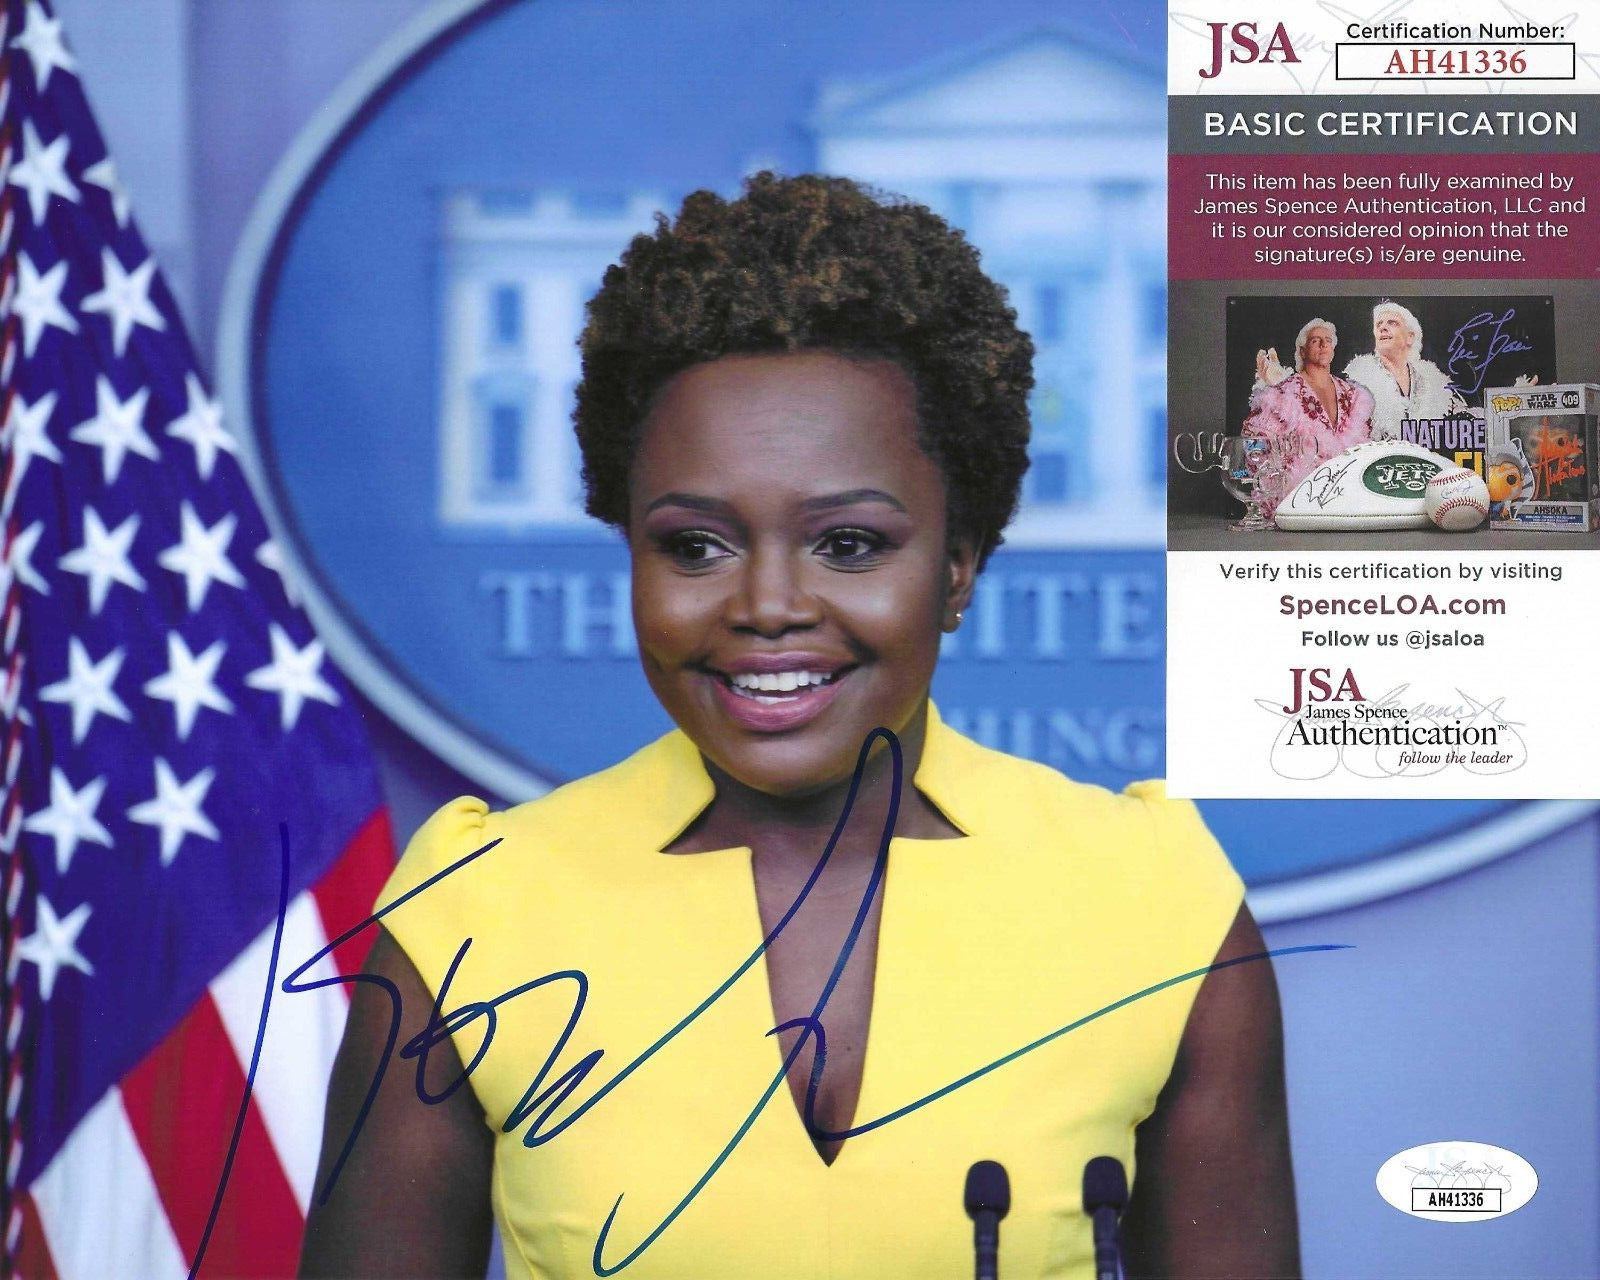 Karine Jean-Pierre Signed 8x10 Photo w/ JSA COA #AH41336 Joe Biden